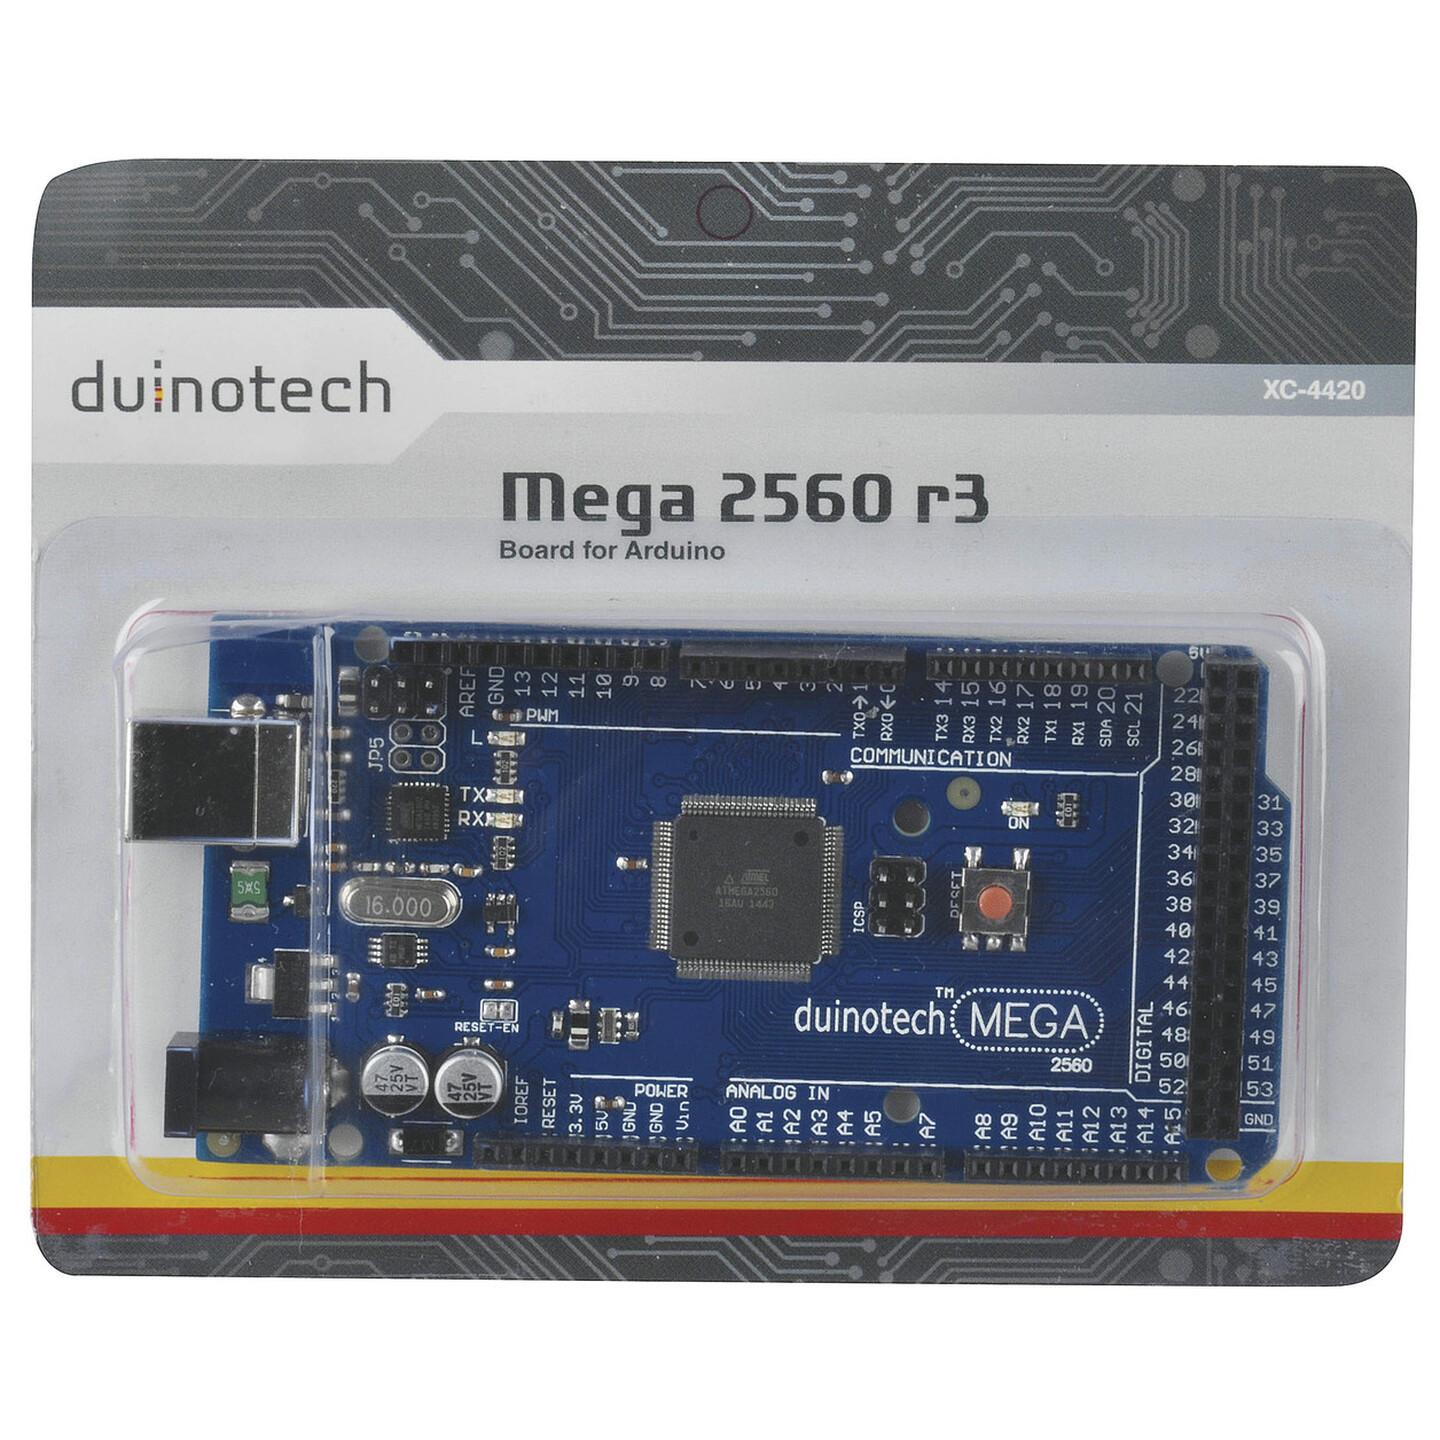 Duinotech MEGA 2560 r3 Main Board